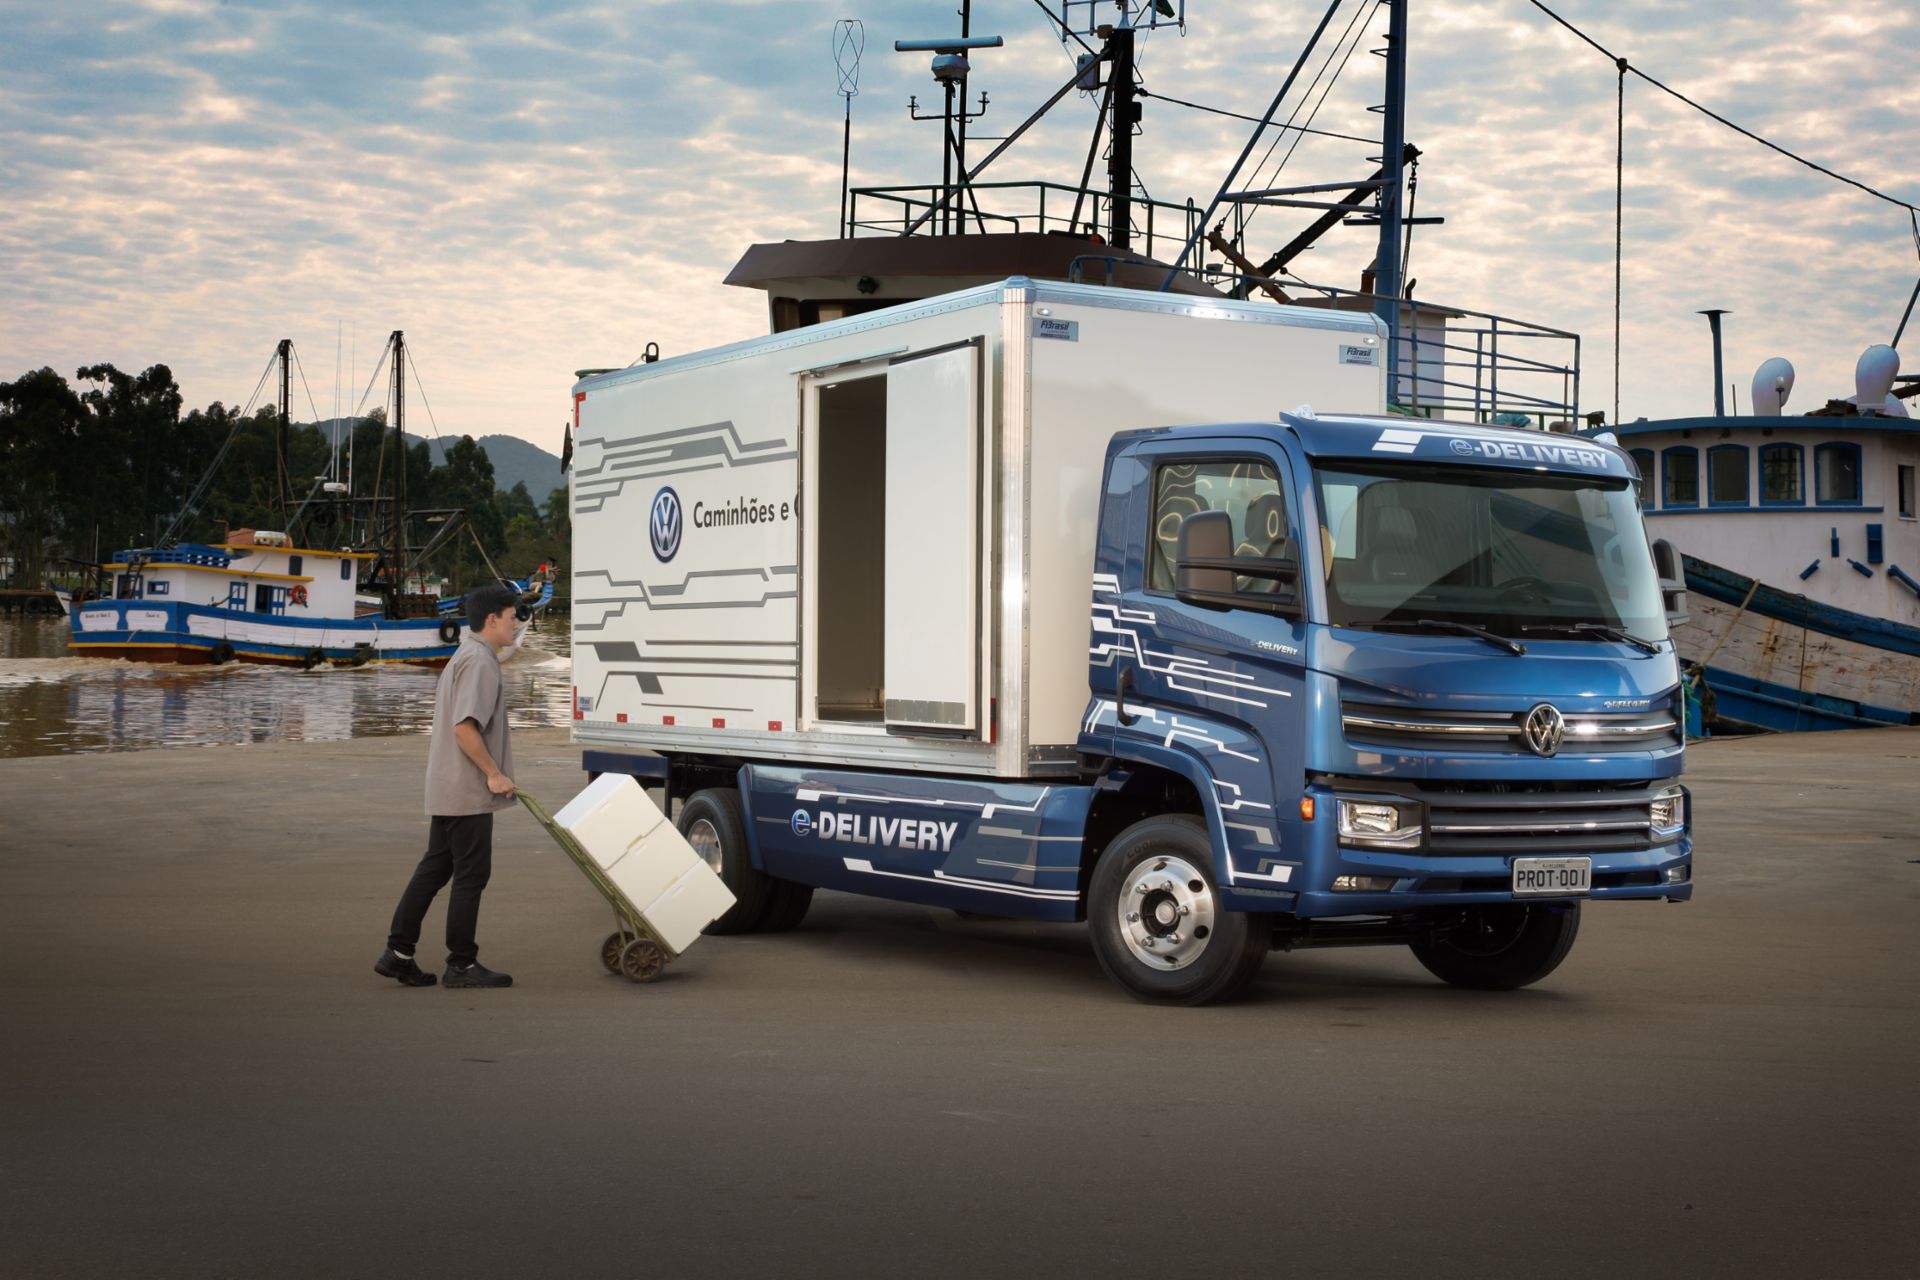 Volkswagen Caminhões e Ônibus, die brasilianische Marke von TRATON, präsentiert den elektrischen Verteiler-Lkw e-Delivery. 
                 